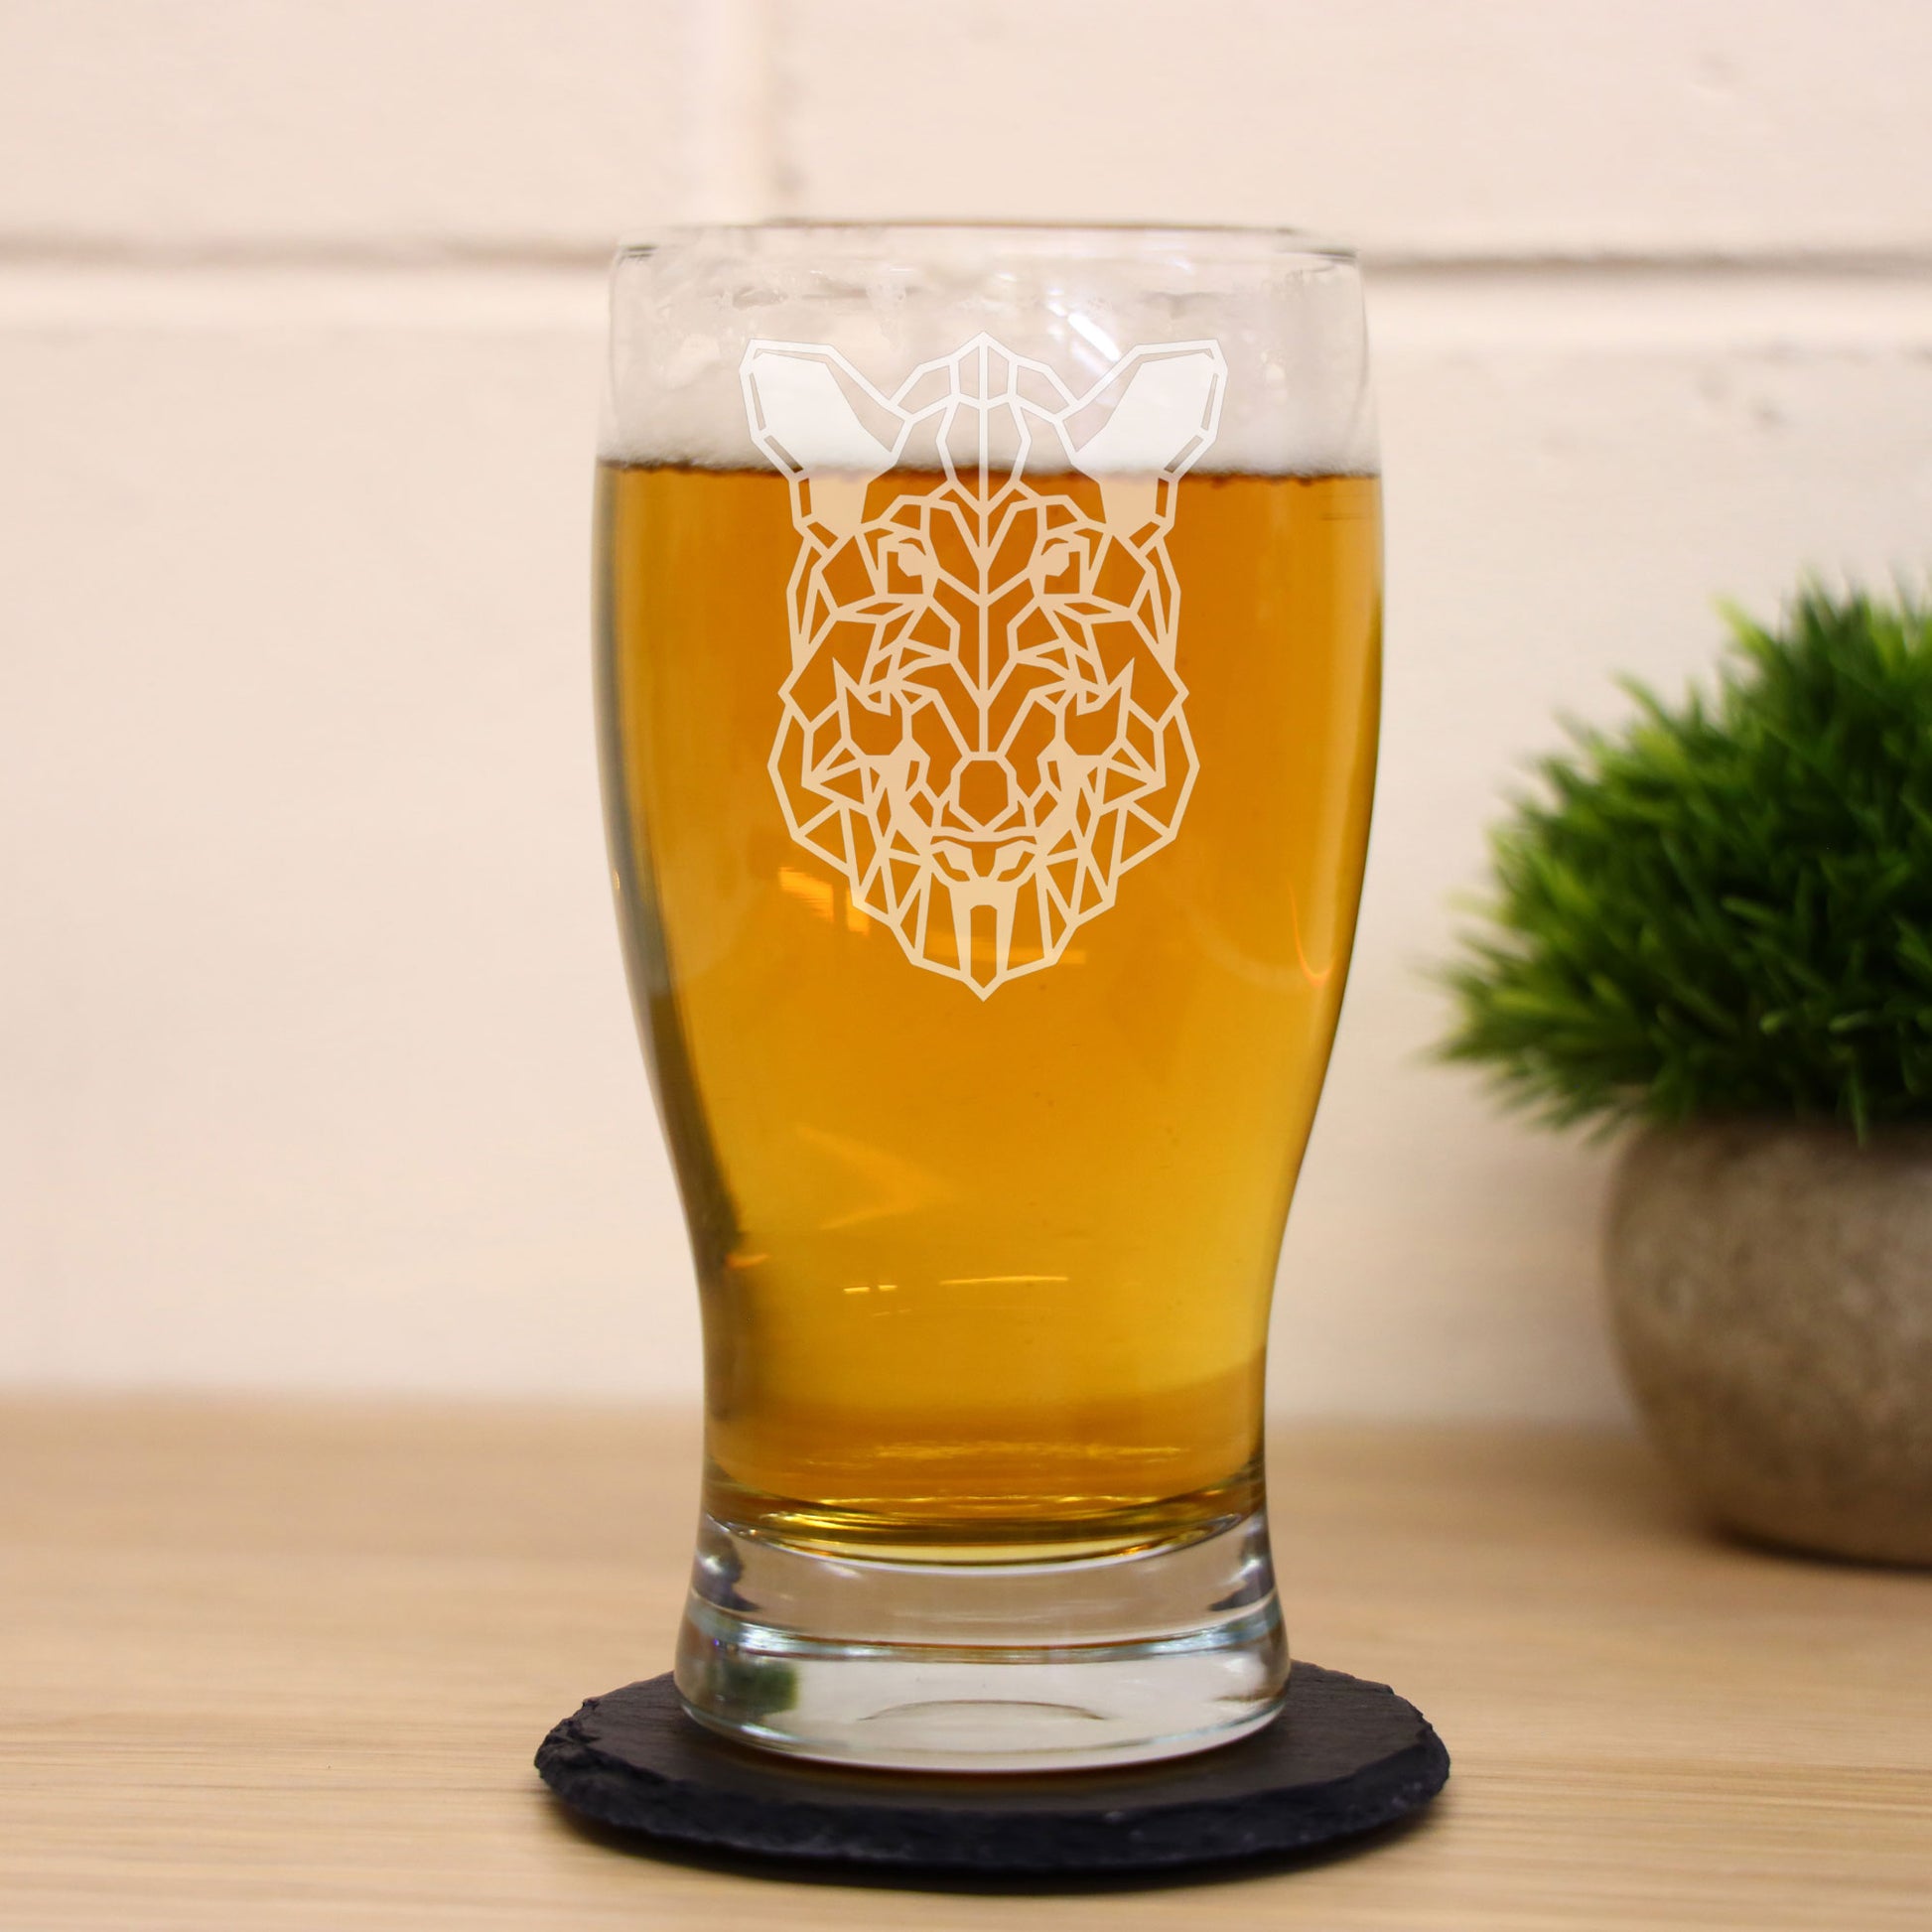 Warthog Engraved Beer Pint Glass  - Always Looking Good -   